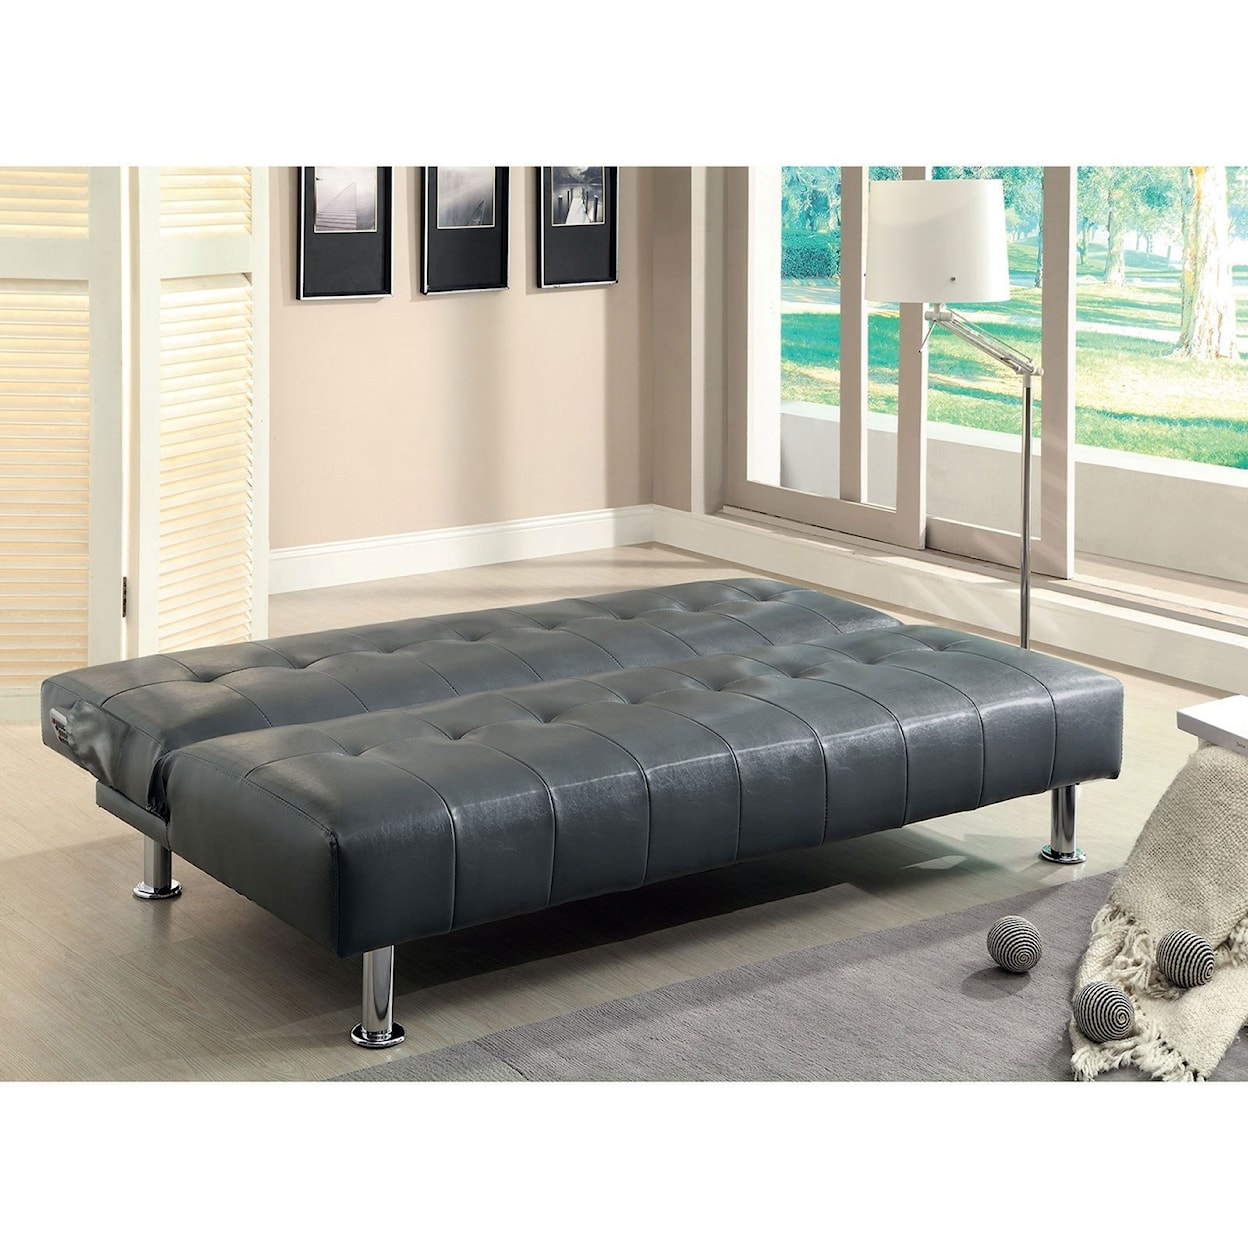 Furniture of America Bulle Leatherette Futon Sofa